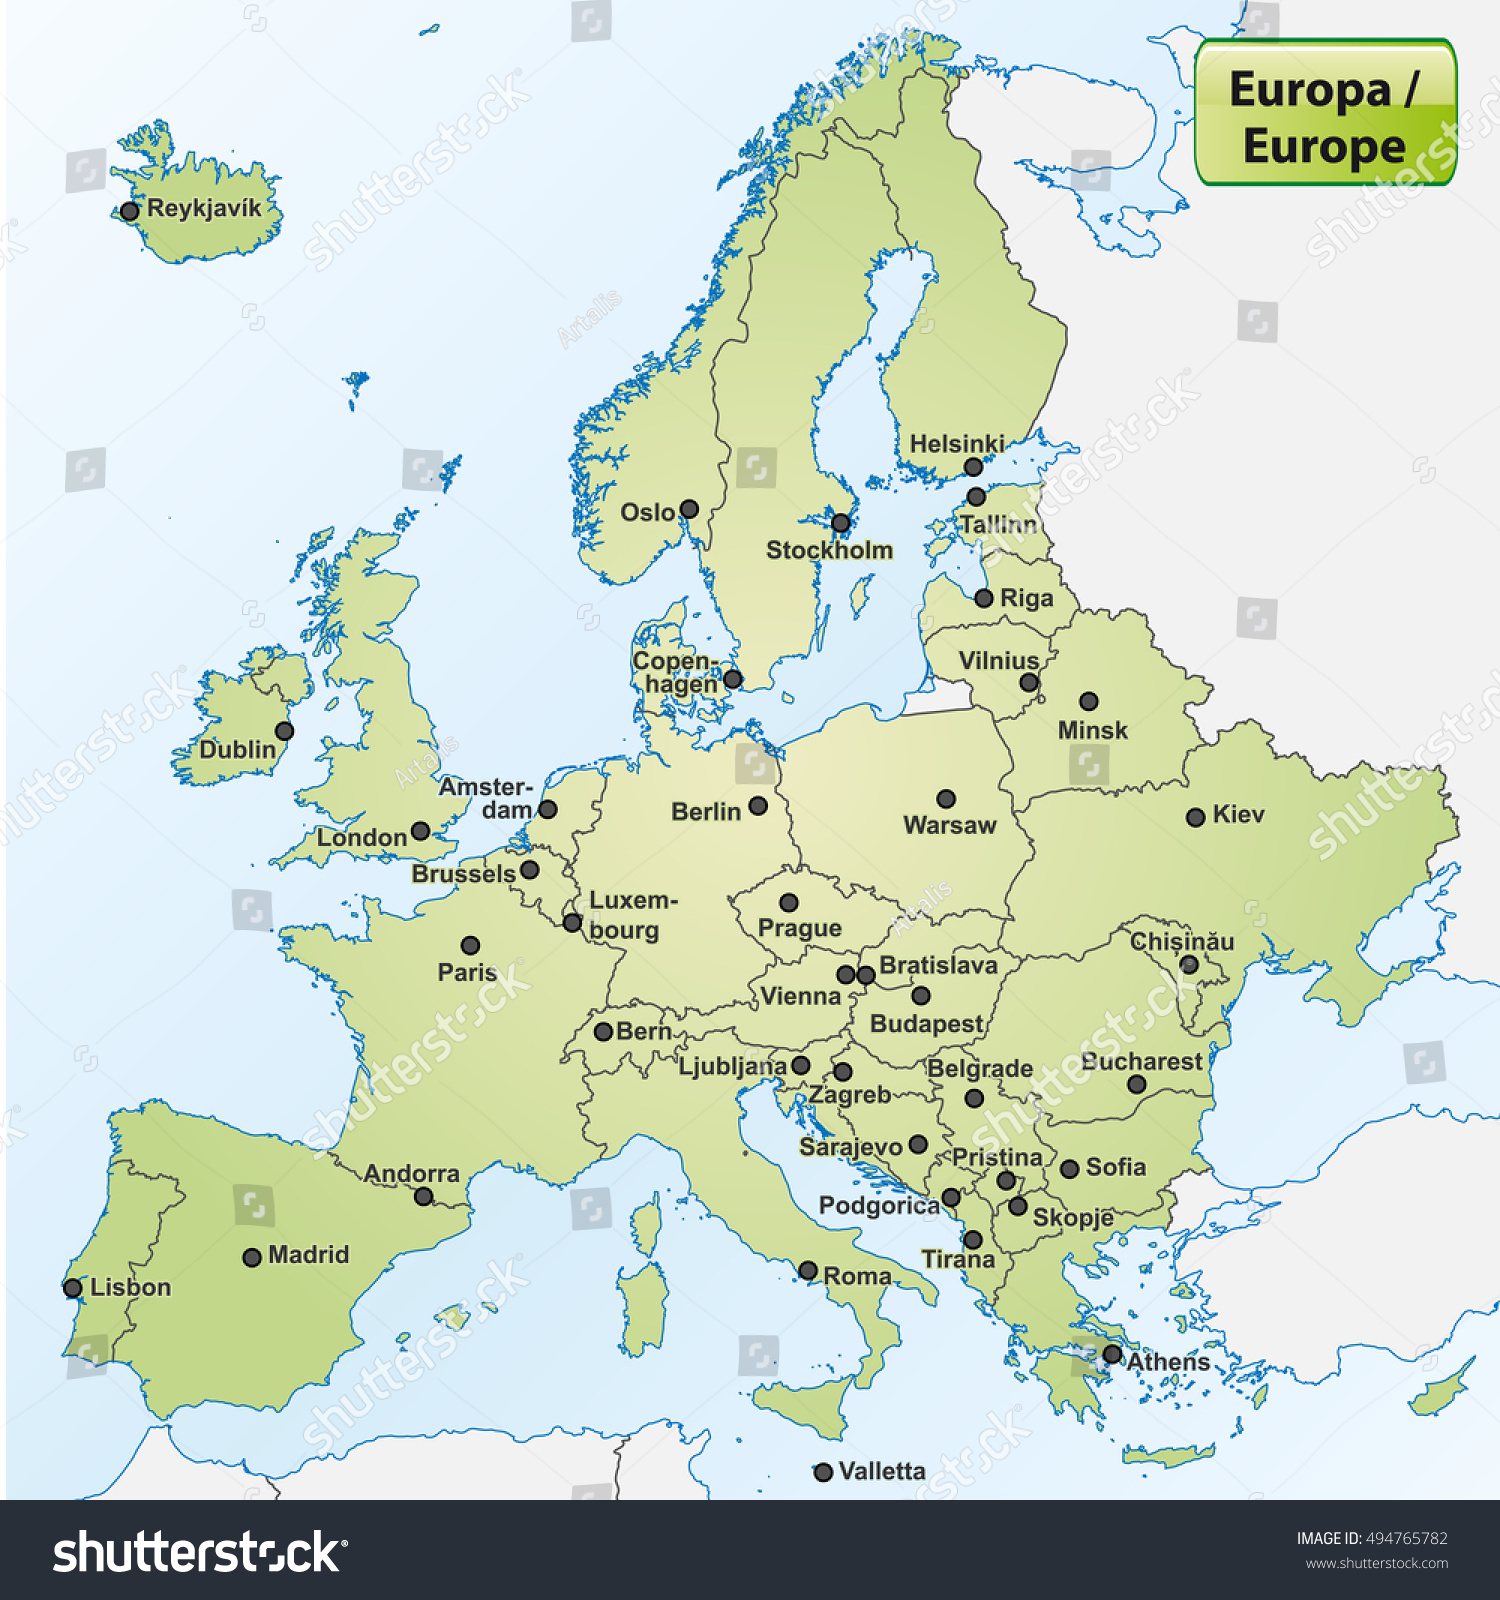 Image Vectorielle De Stock De Carte De L'europe Avec Les dedans Carte Europe Capitale